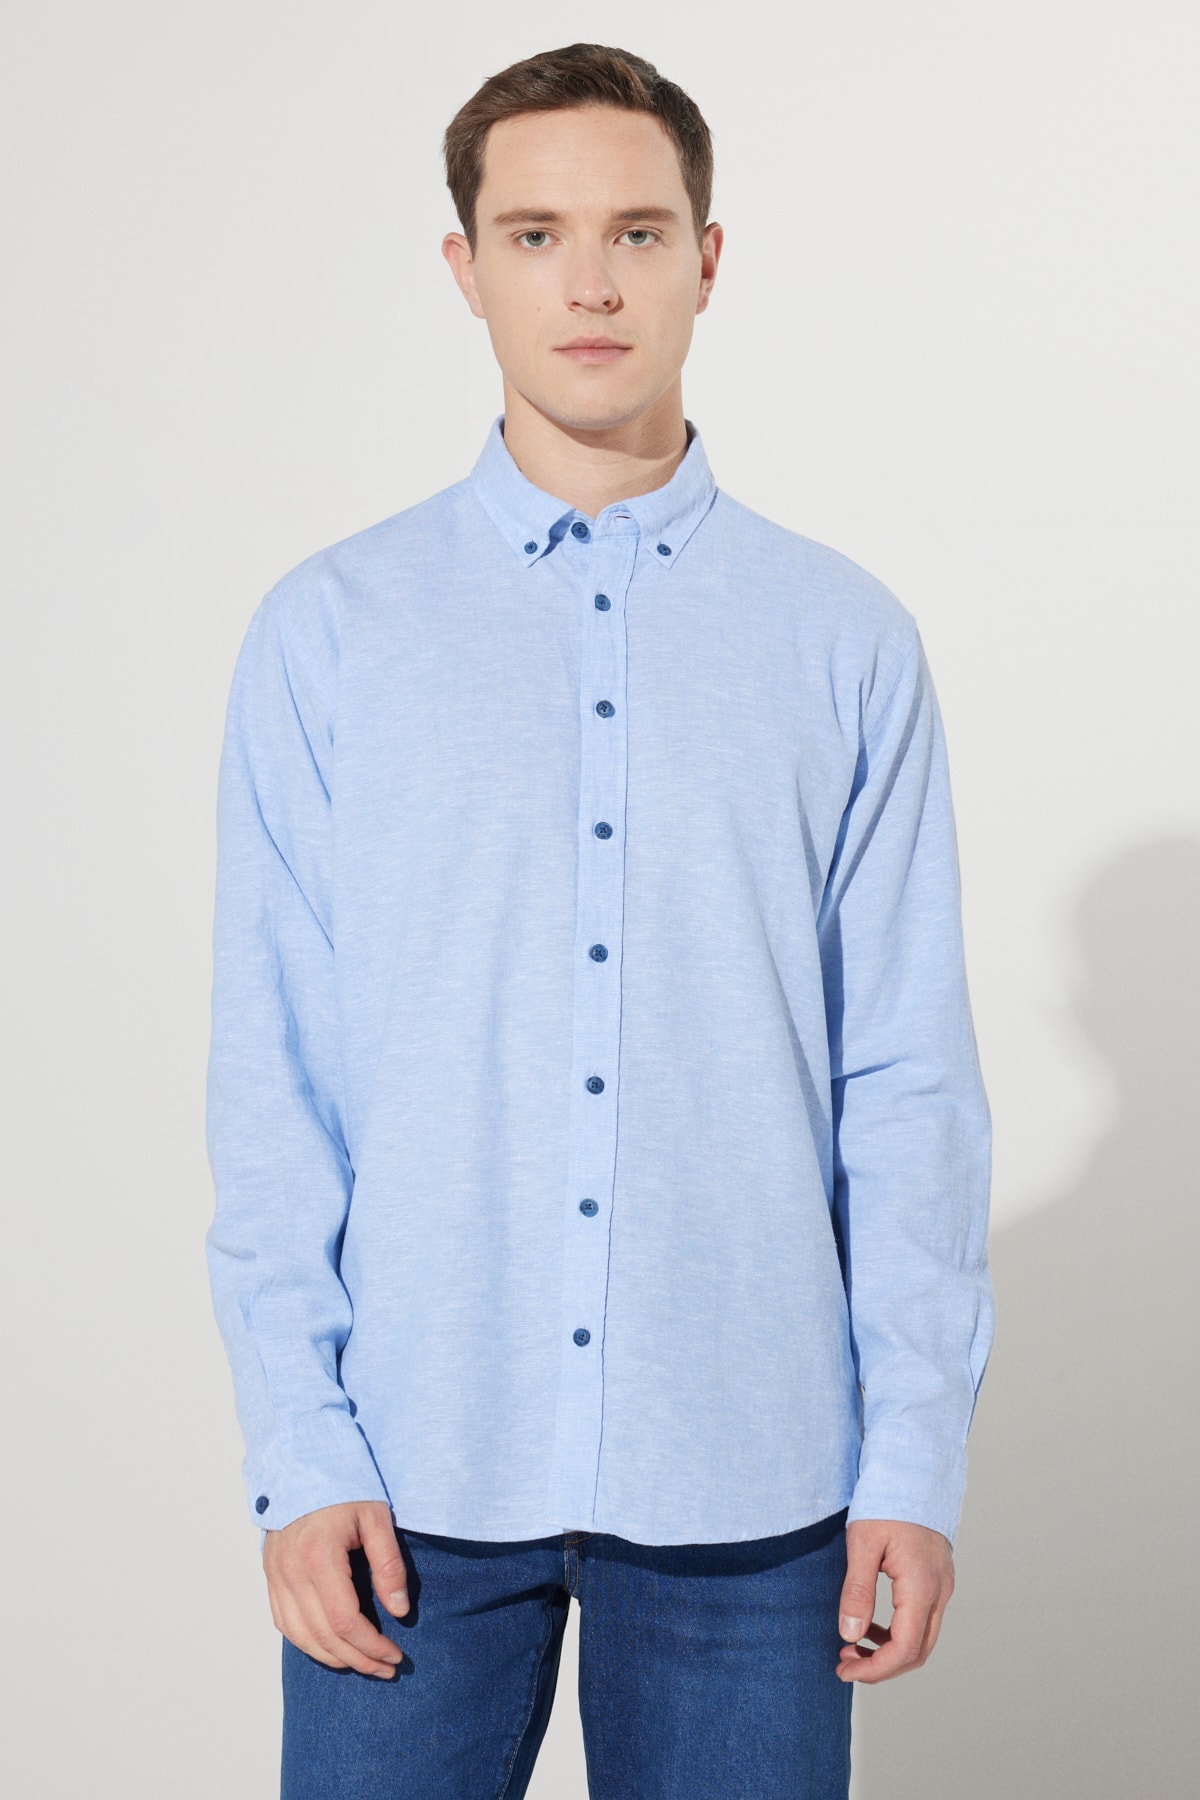 ALTINYILDIZ CLASSICS Men's Blue Comfort Fit Comfy Cut Buttoned Collar Linen Shirt.